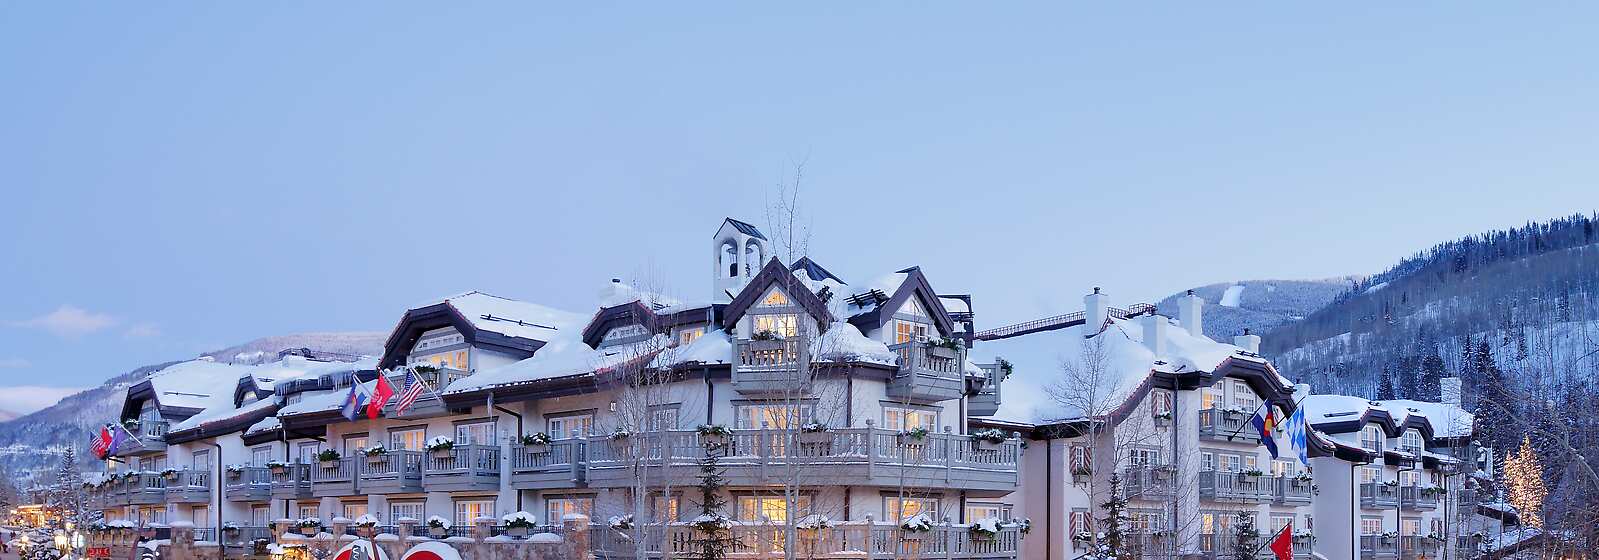 Sonnenalp Hotel Exterior - Winter